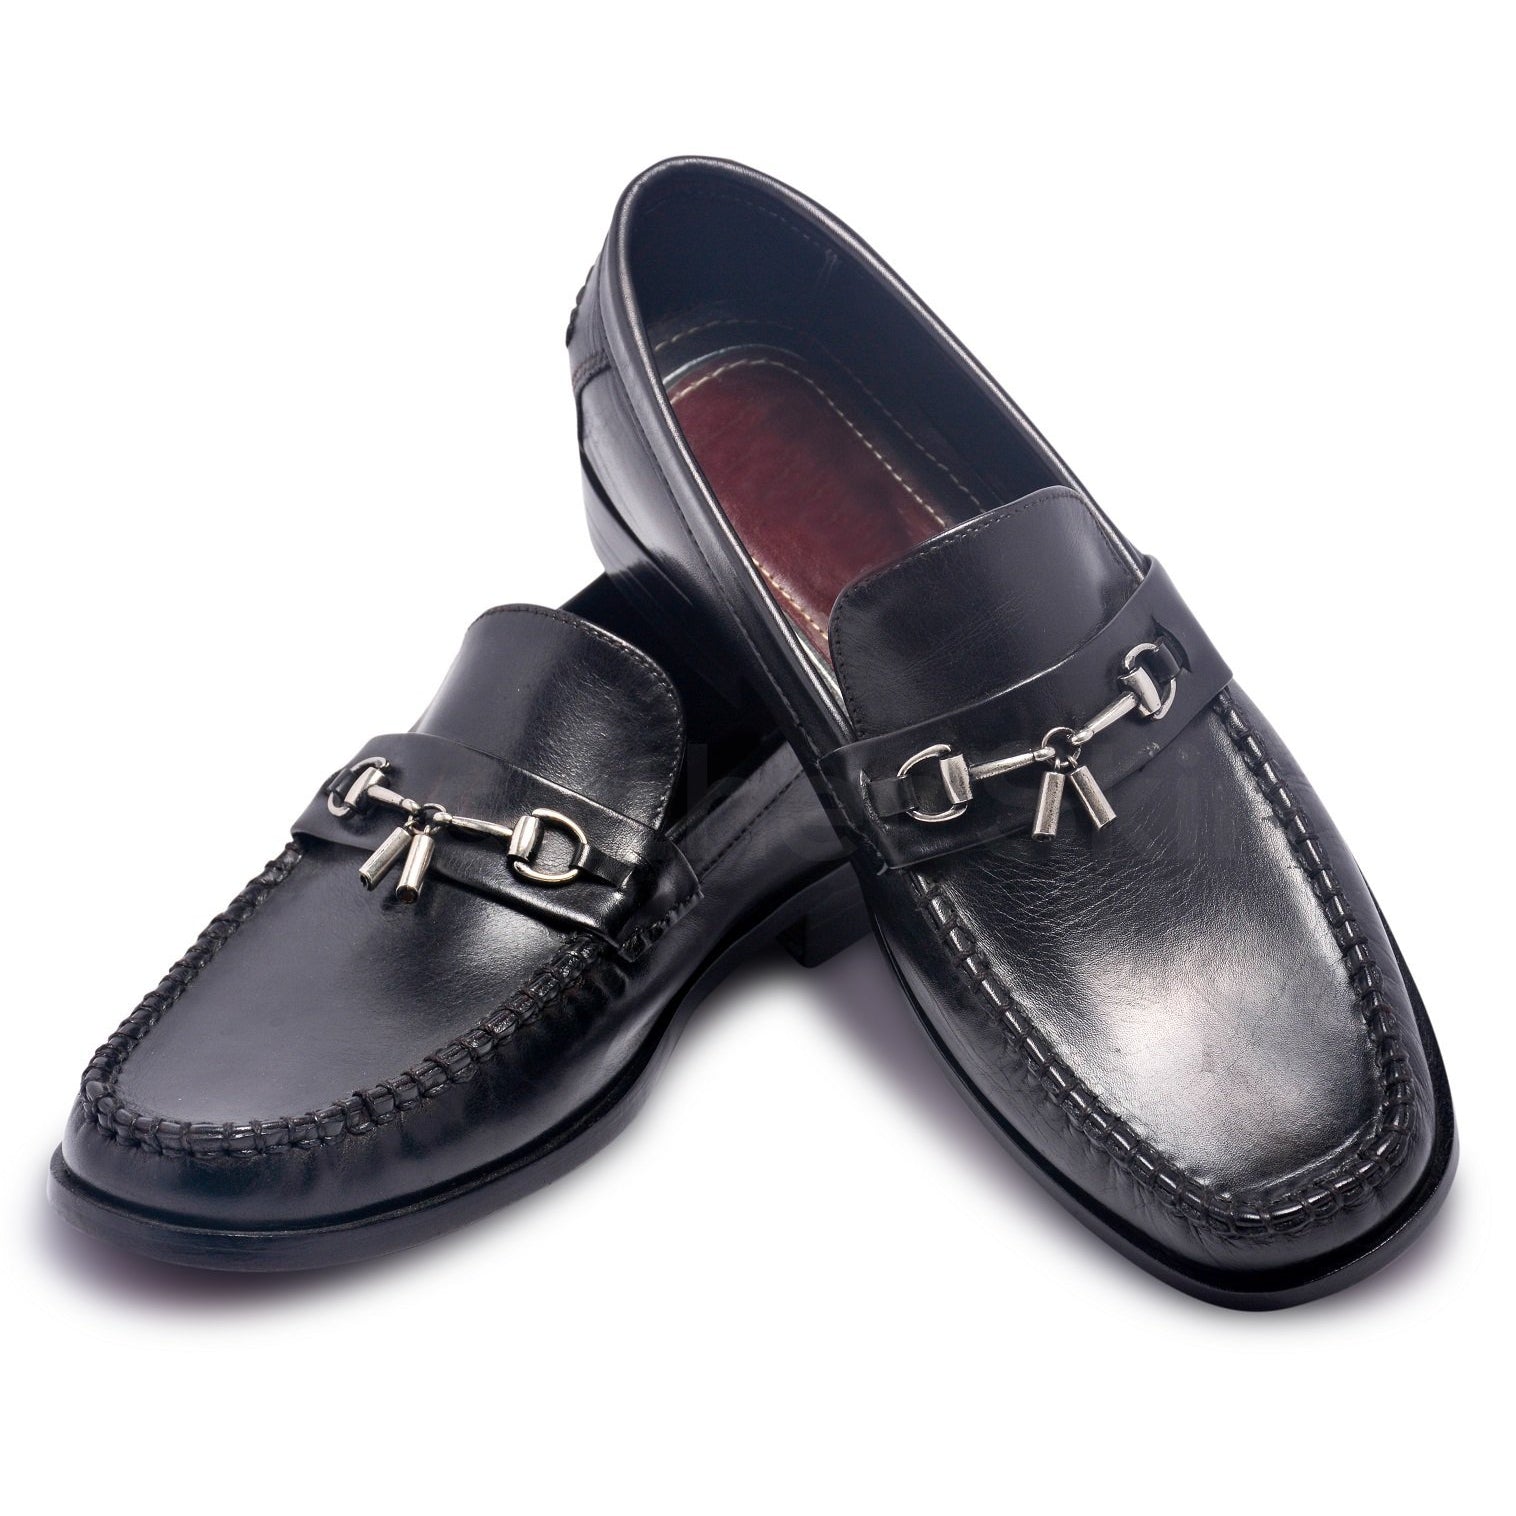 Men Blue Penny Loafer Slip-On Genuine Leather Shoes - Leather Skin Shop